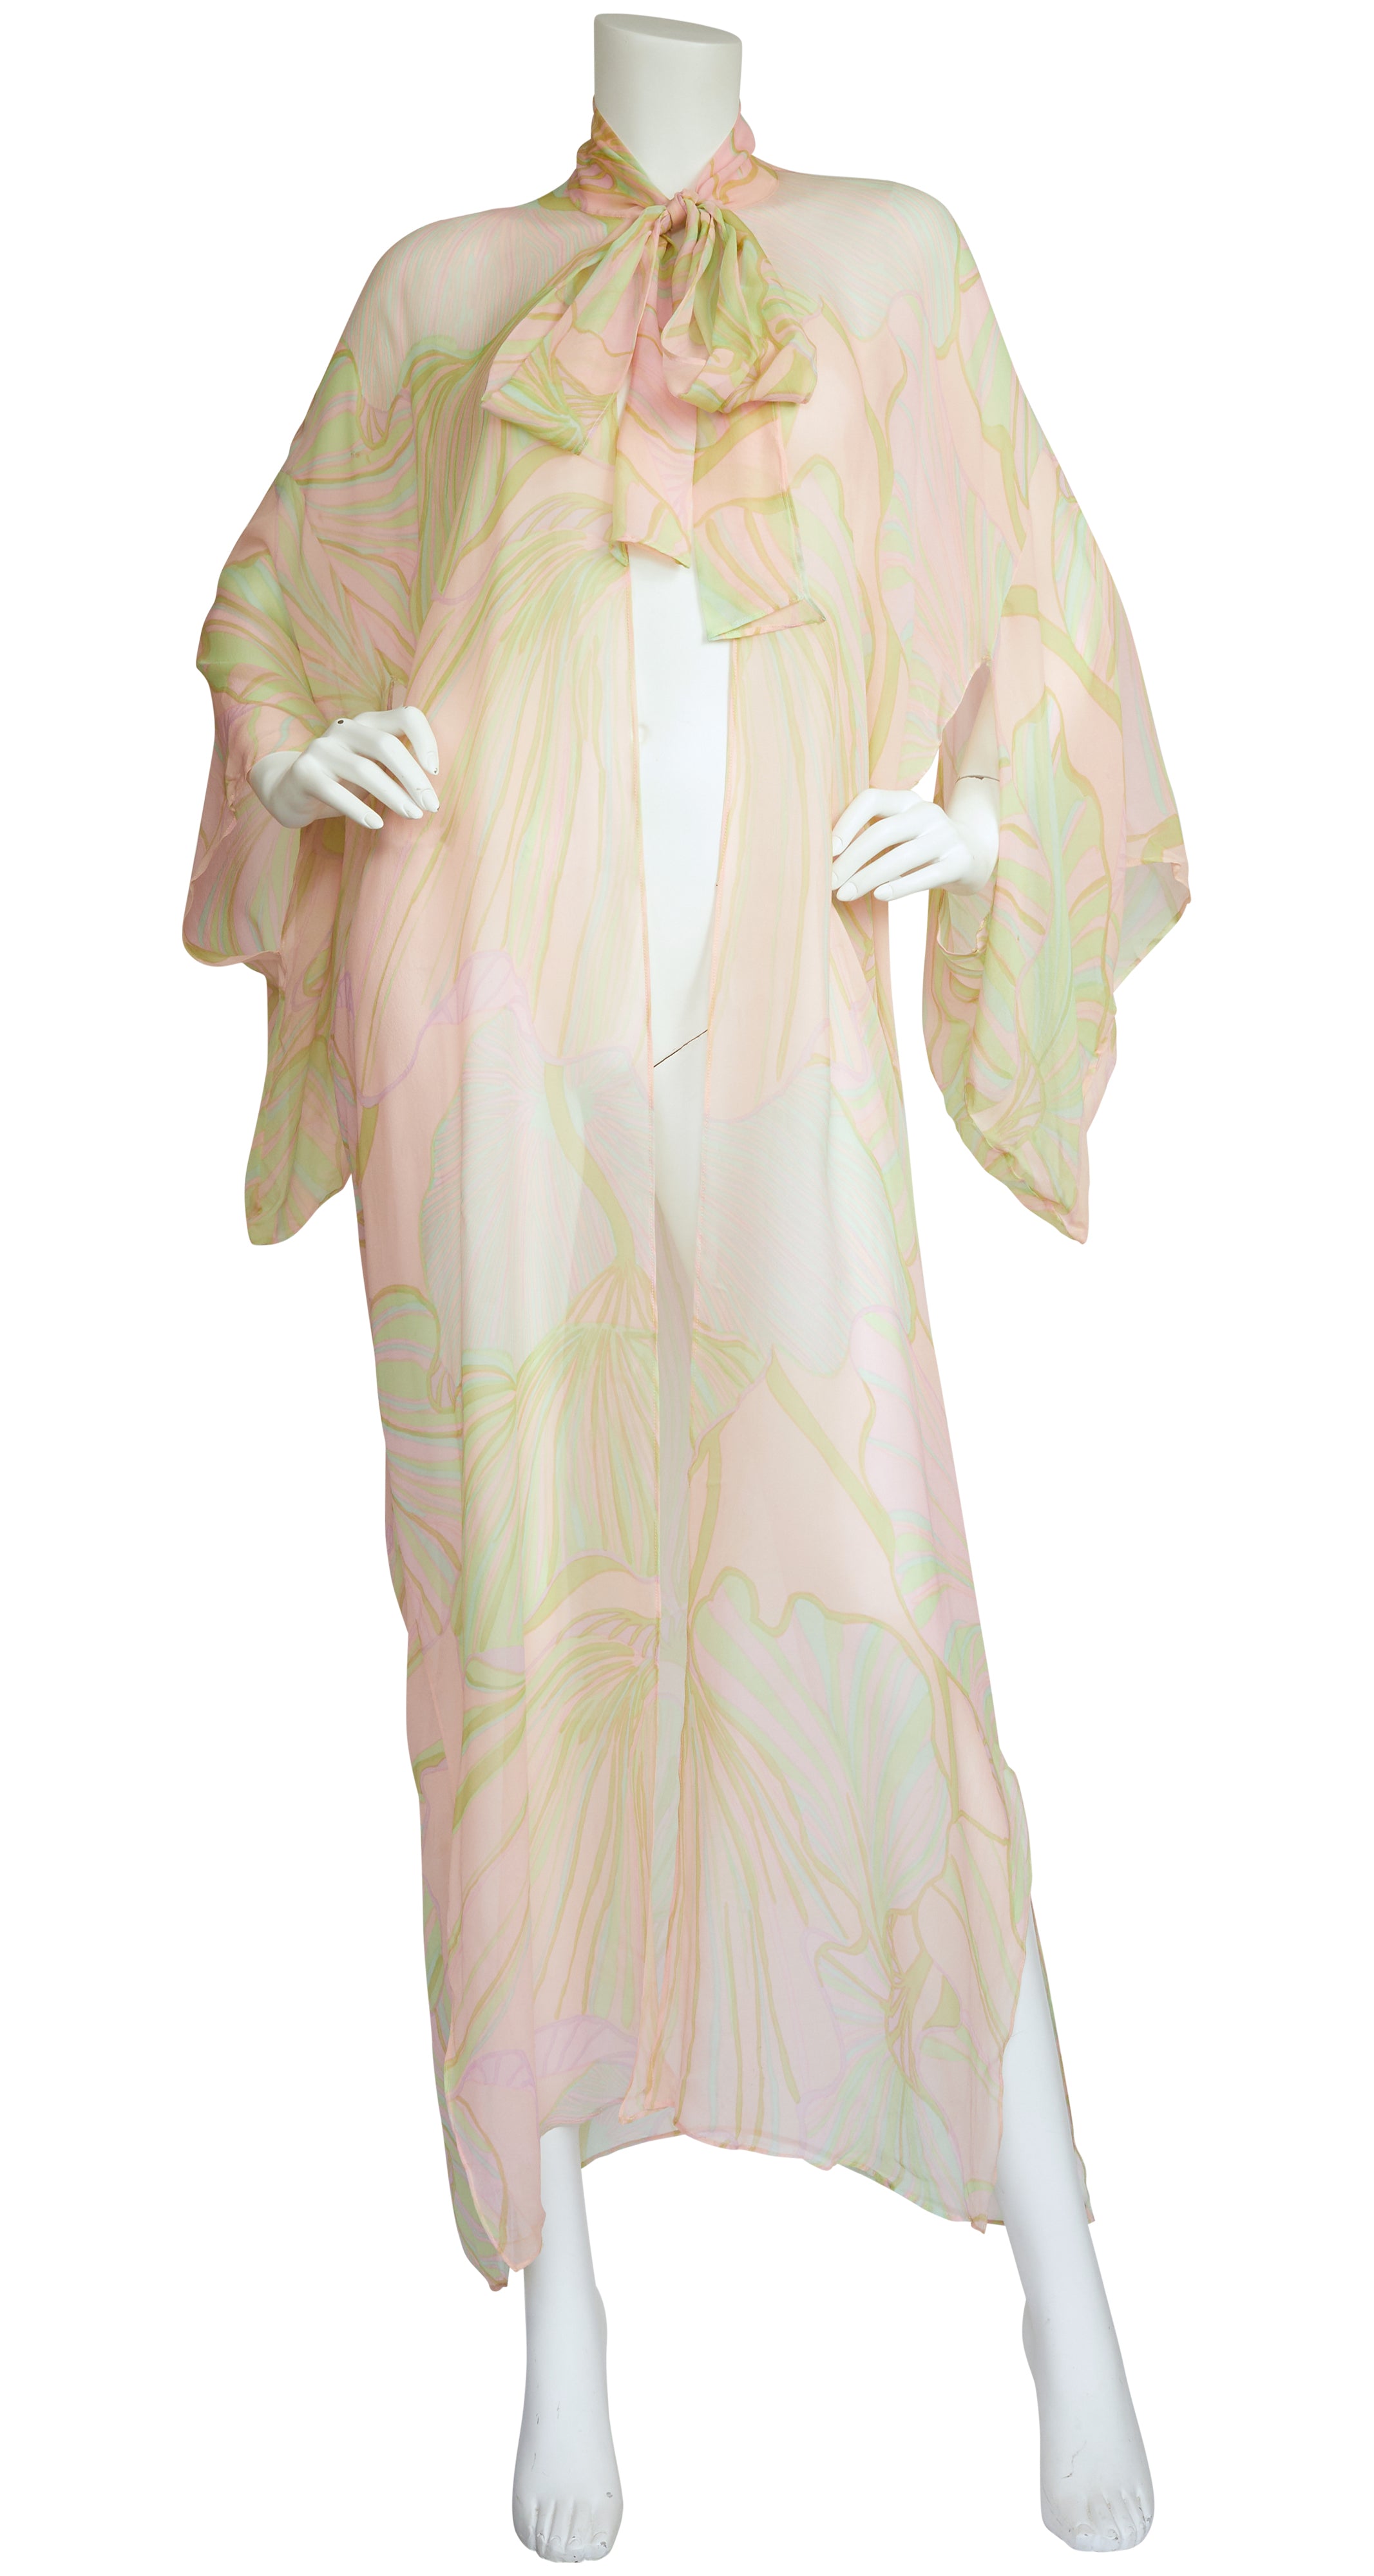 1960s Pastel Sheer Silk Chiffon Kimono